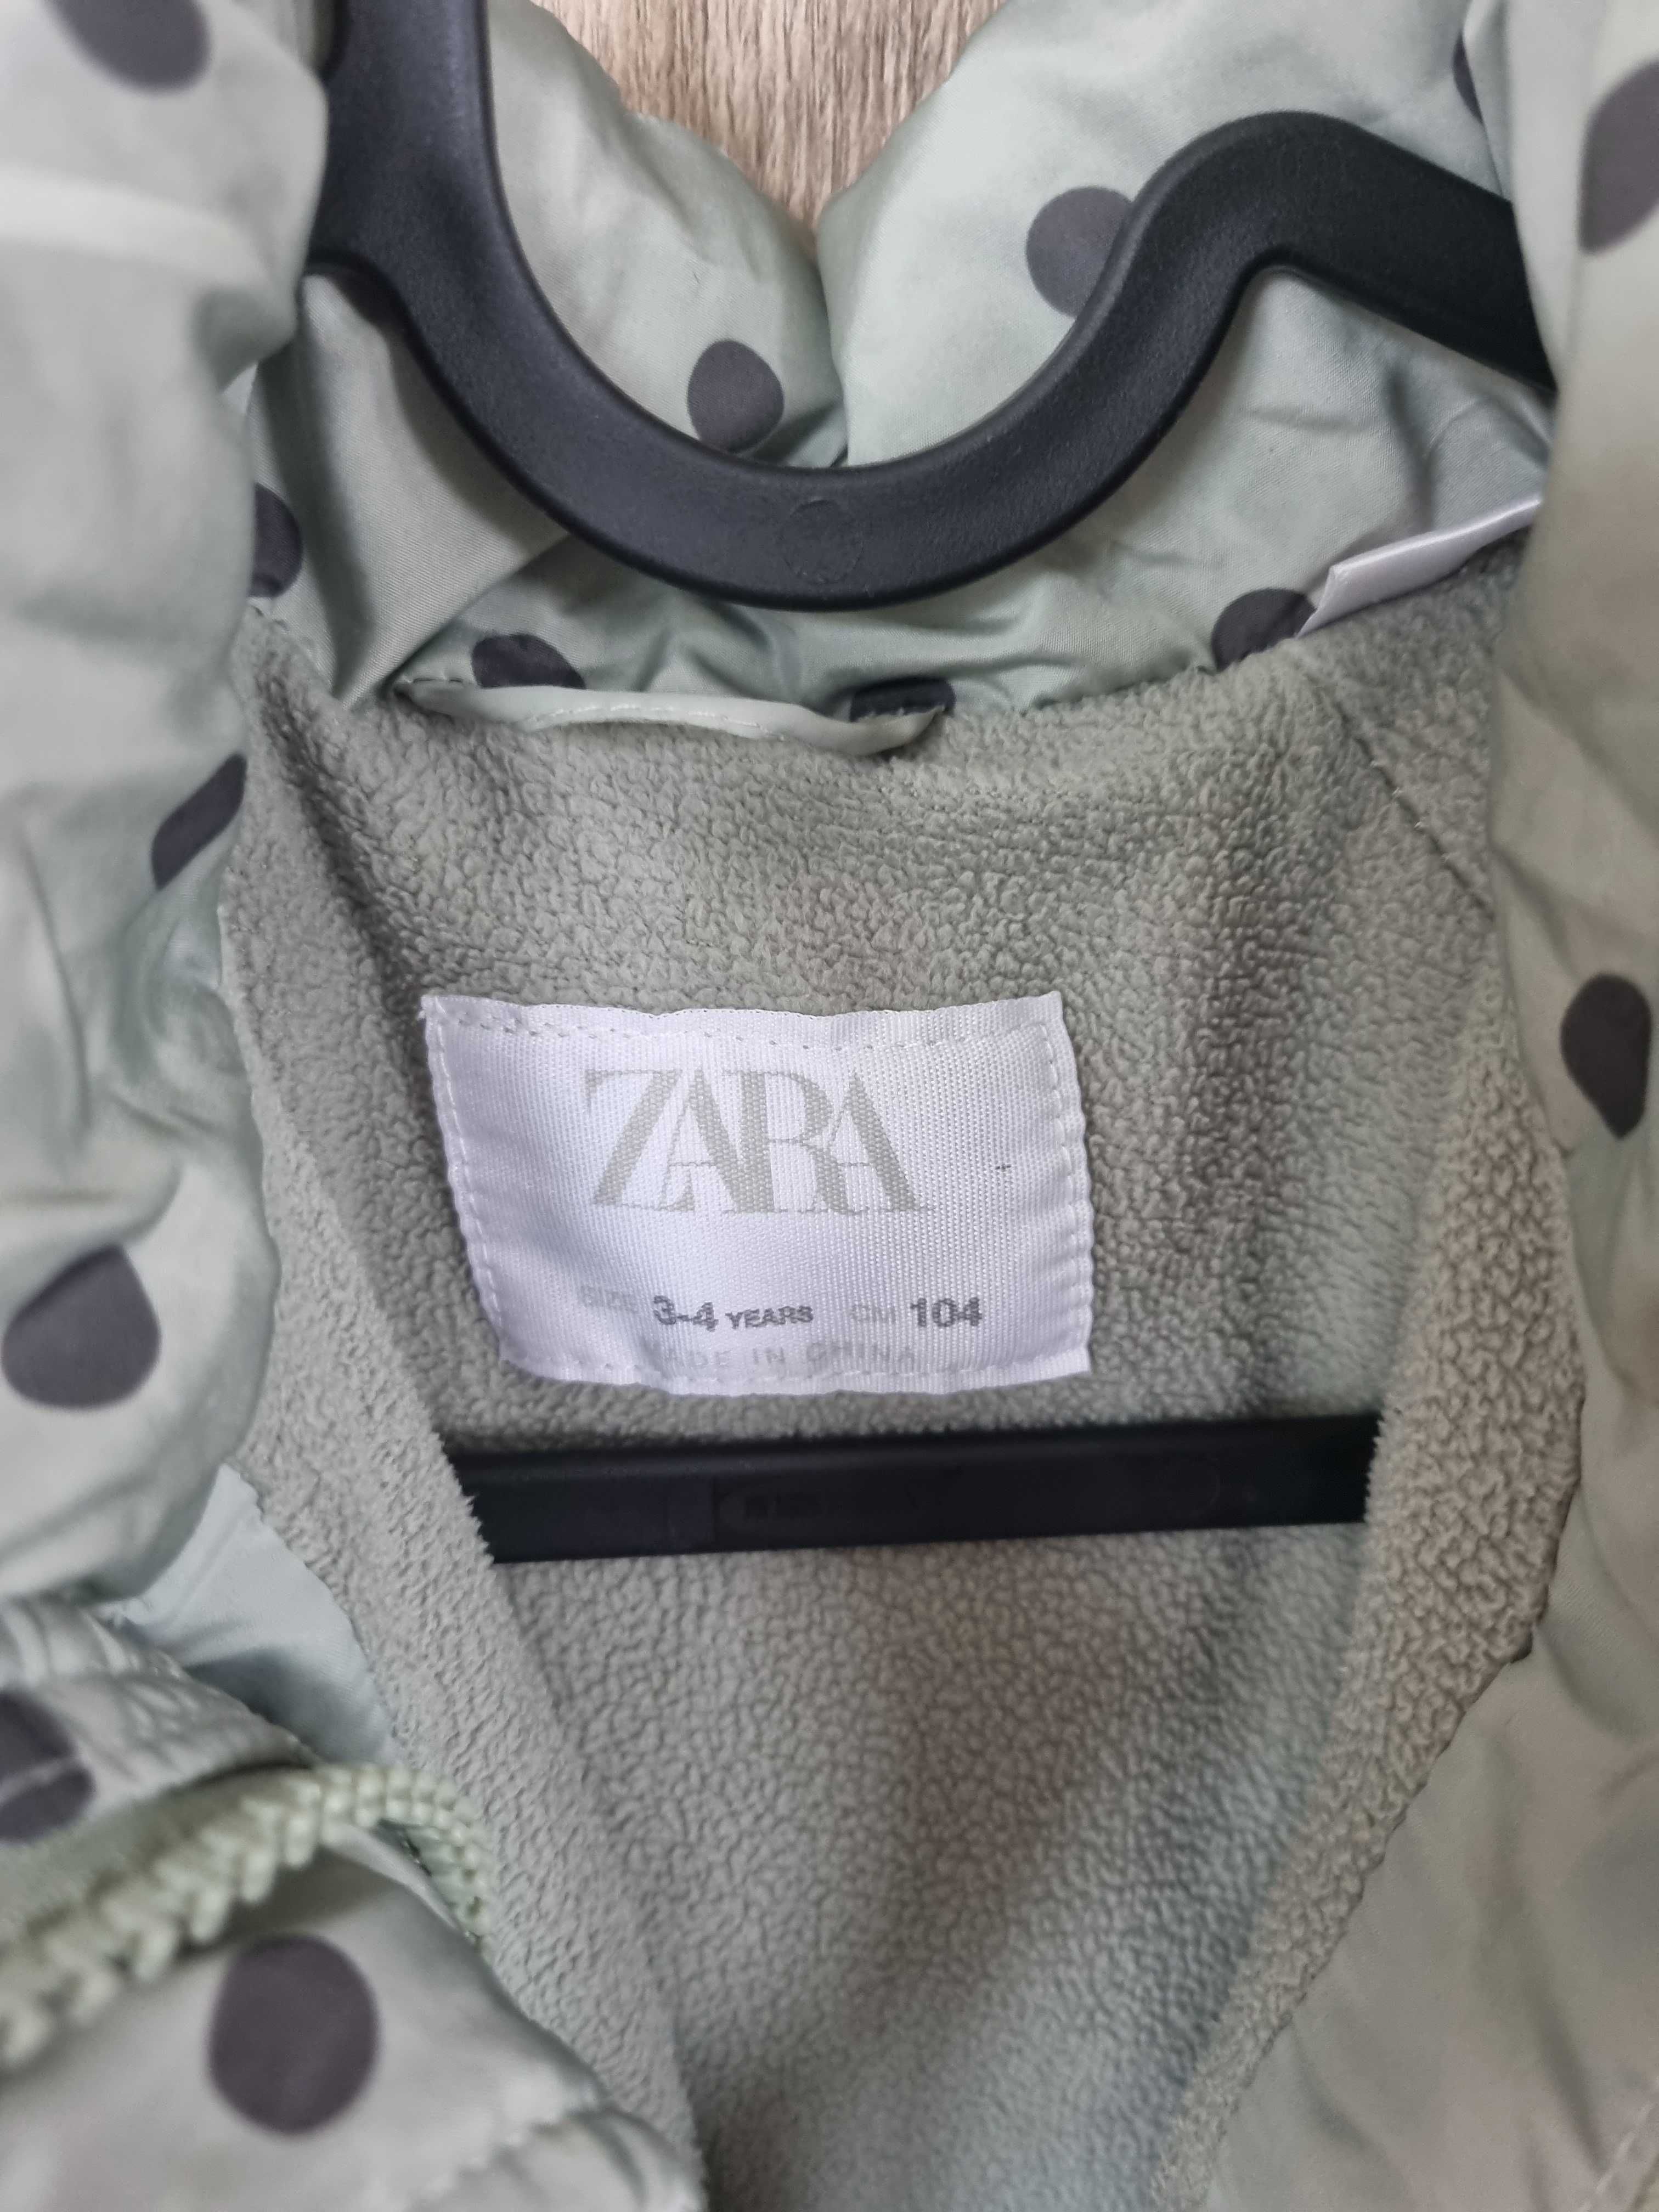 Kurtka Zara 104 miętowa w szare kropki dla dziewczynki